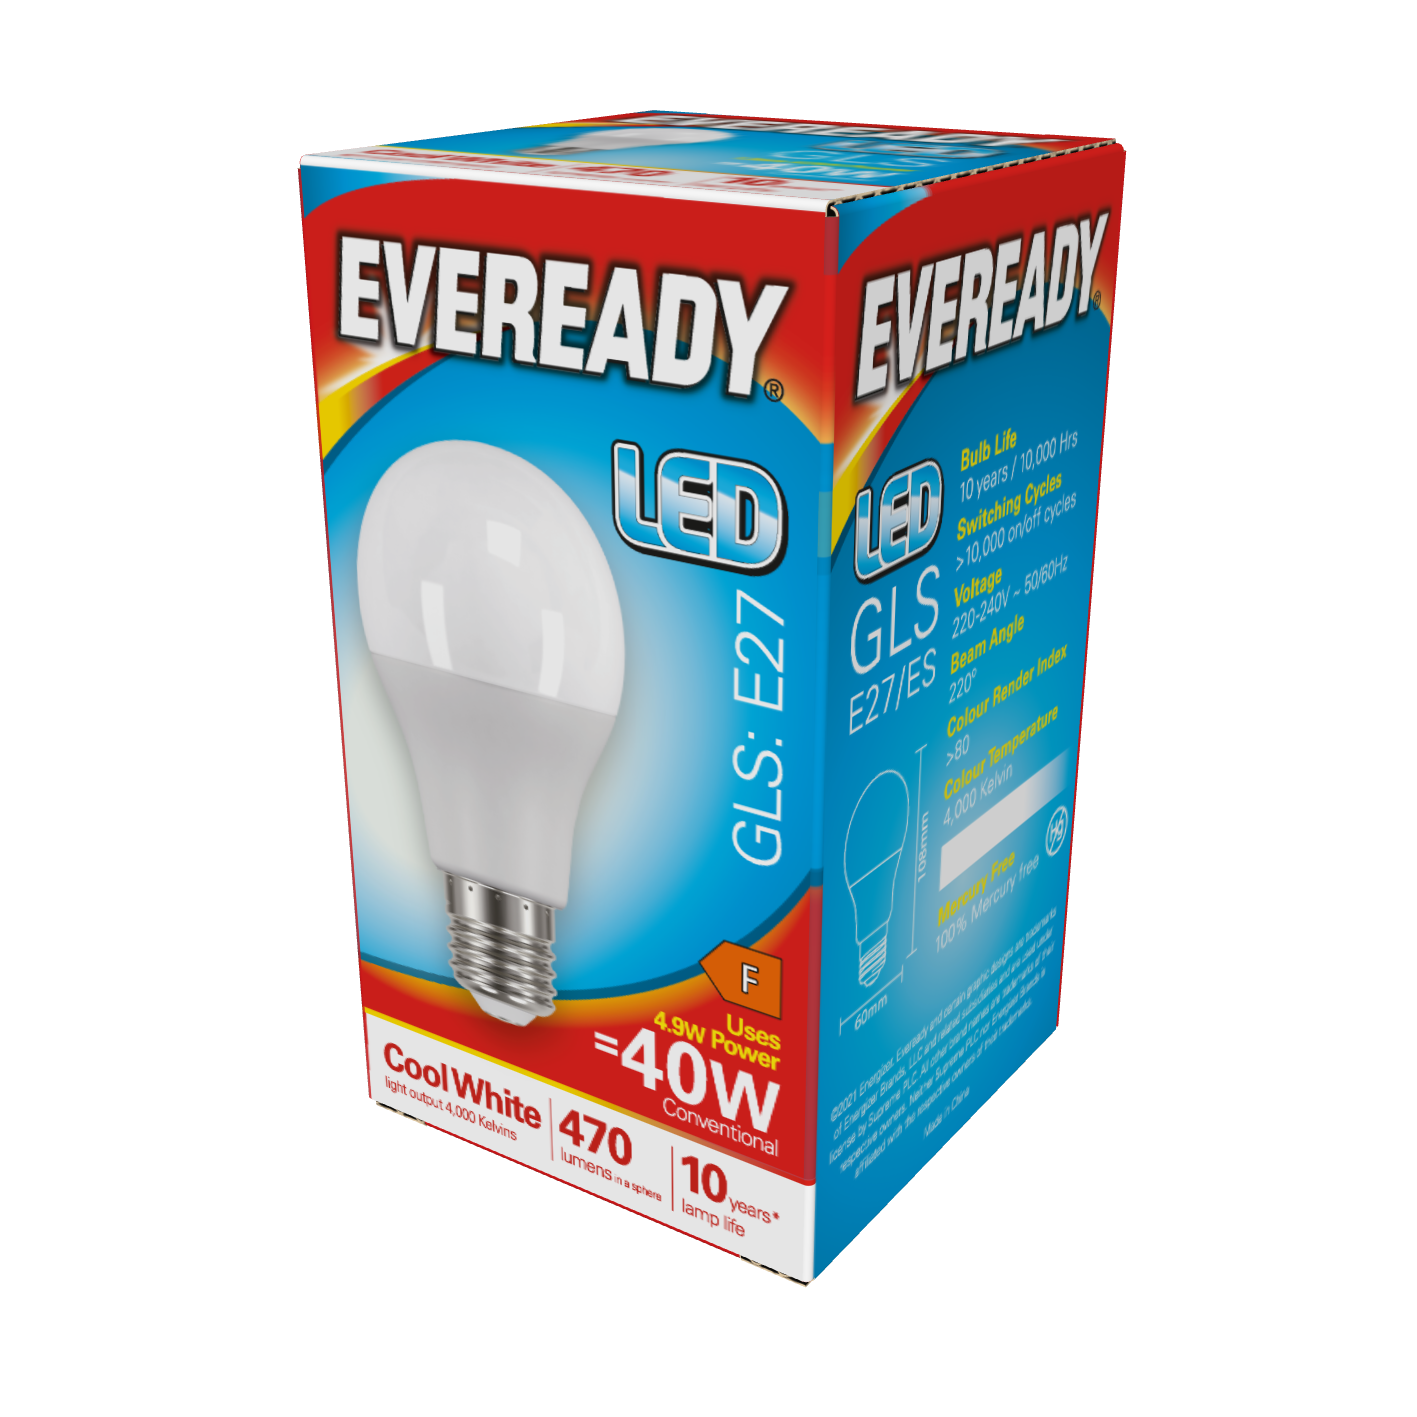 Eveready LED GLS E27 (ES) 470 lm 4,9 W 4.000 K (kaltweiß), Packung mit 1 Stück